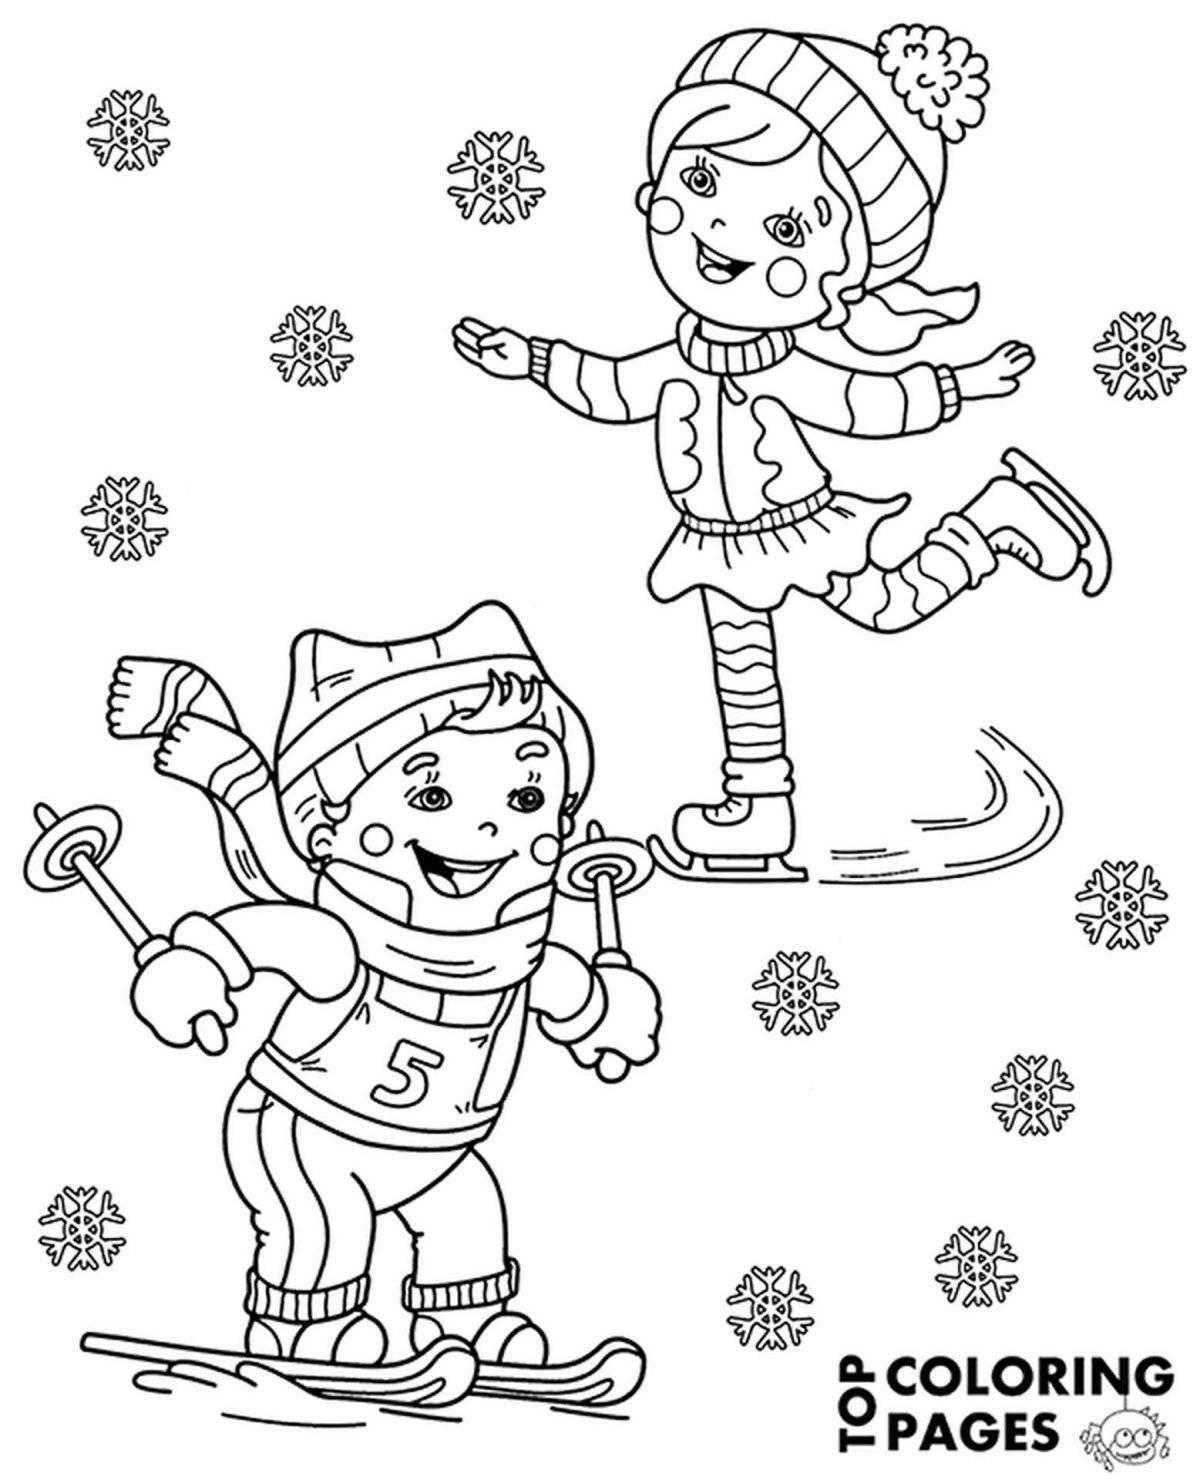 Выдающаяся страница раскраски зимних видов спорта для детей 6-7 лет